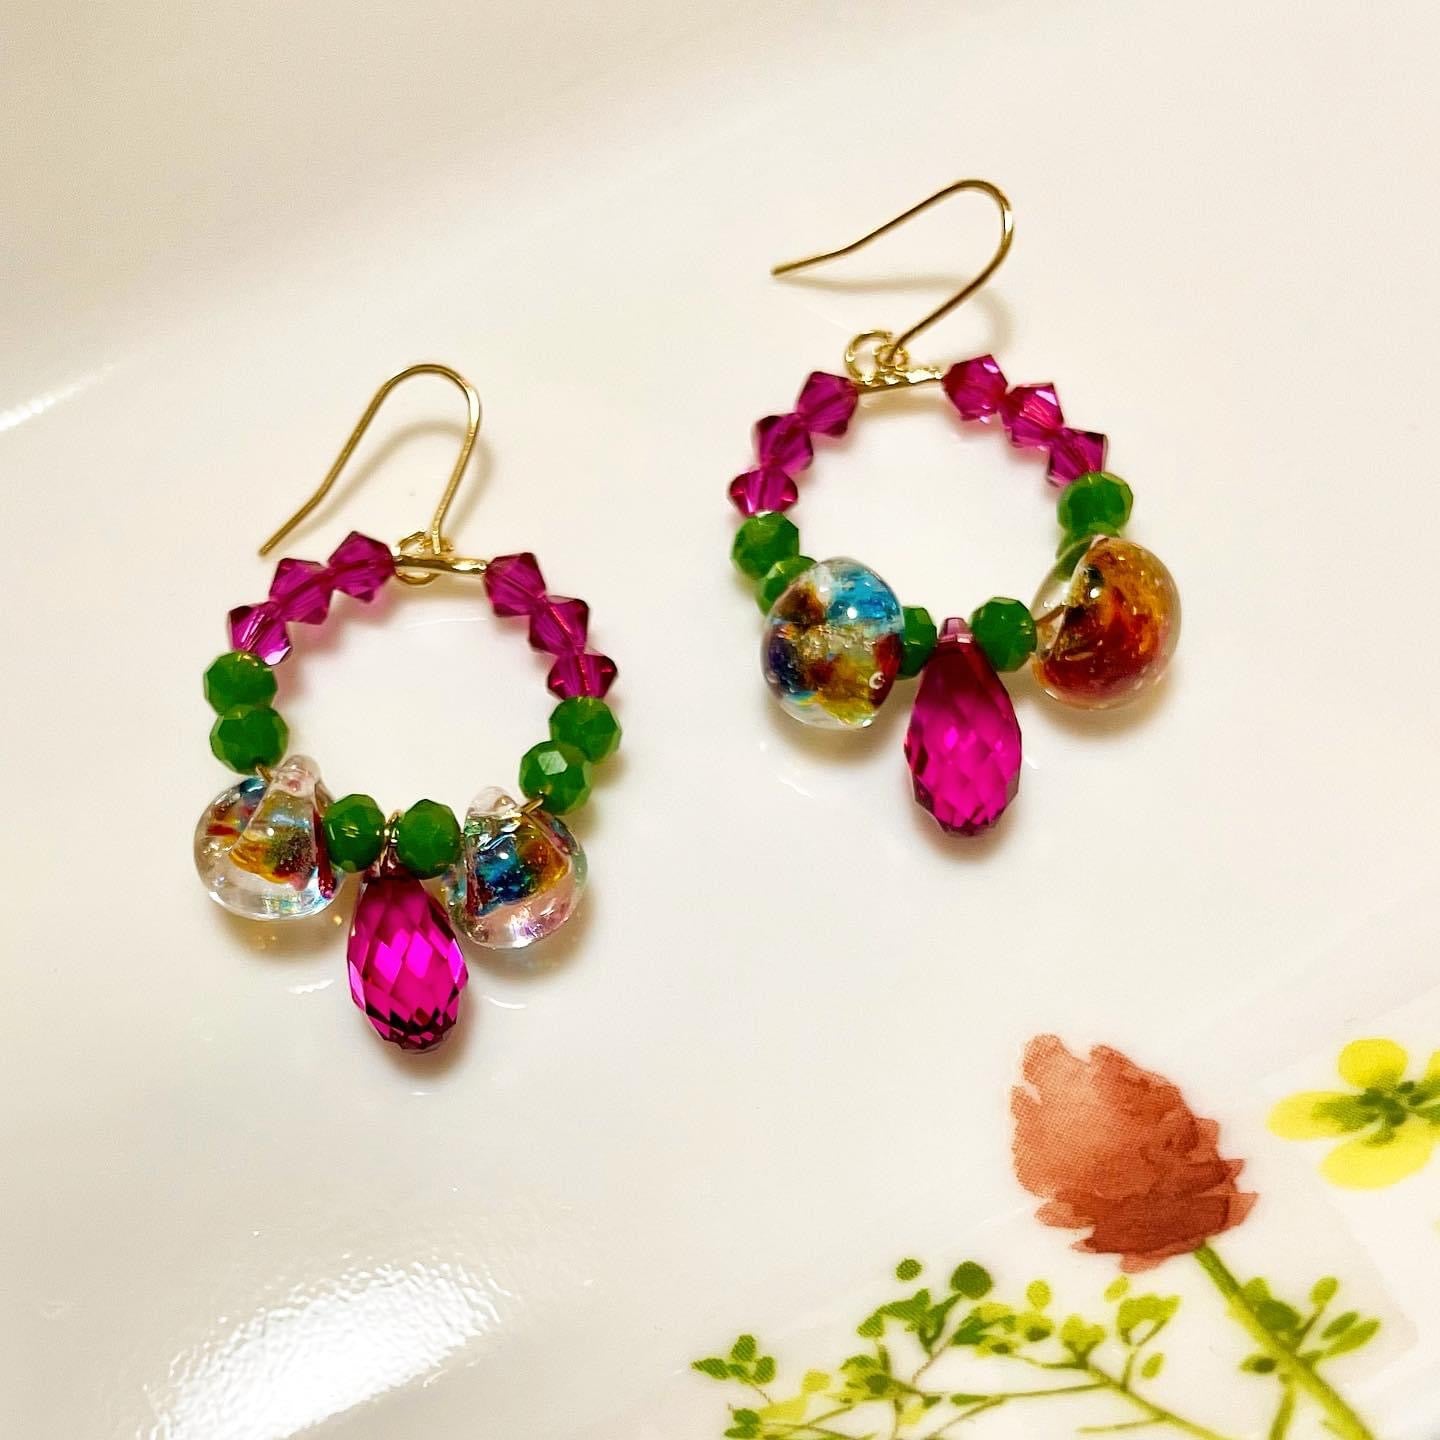 Colorful earrings/hoops